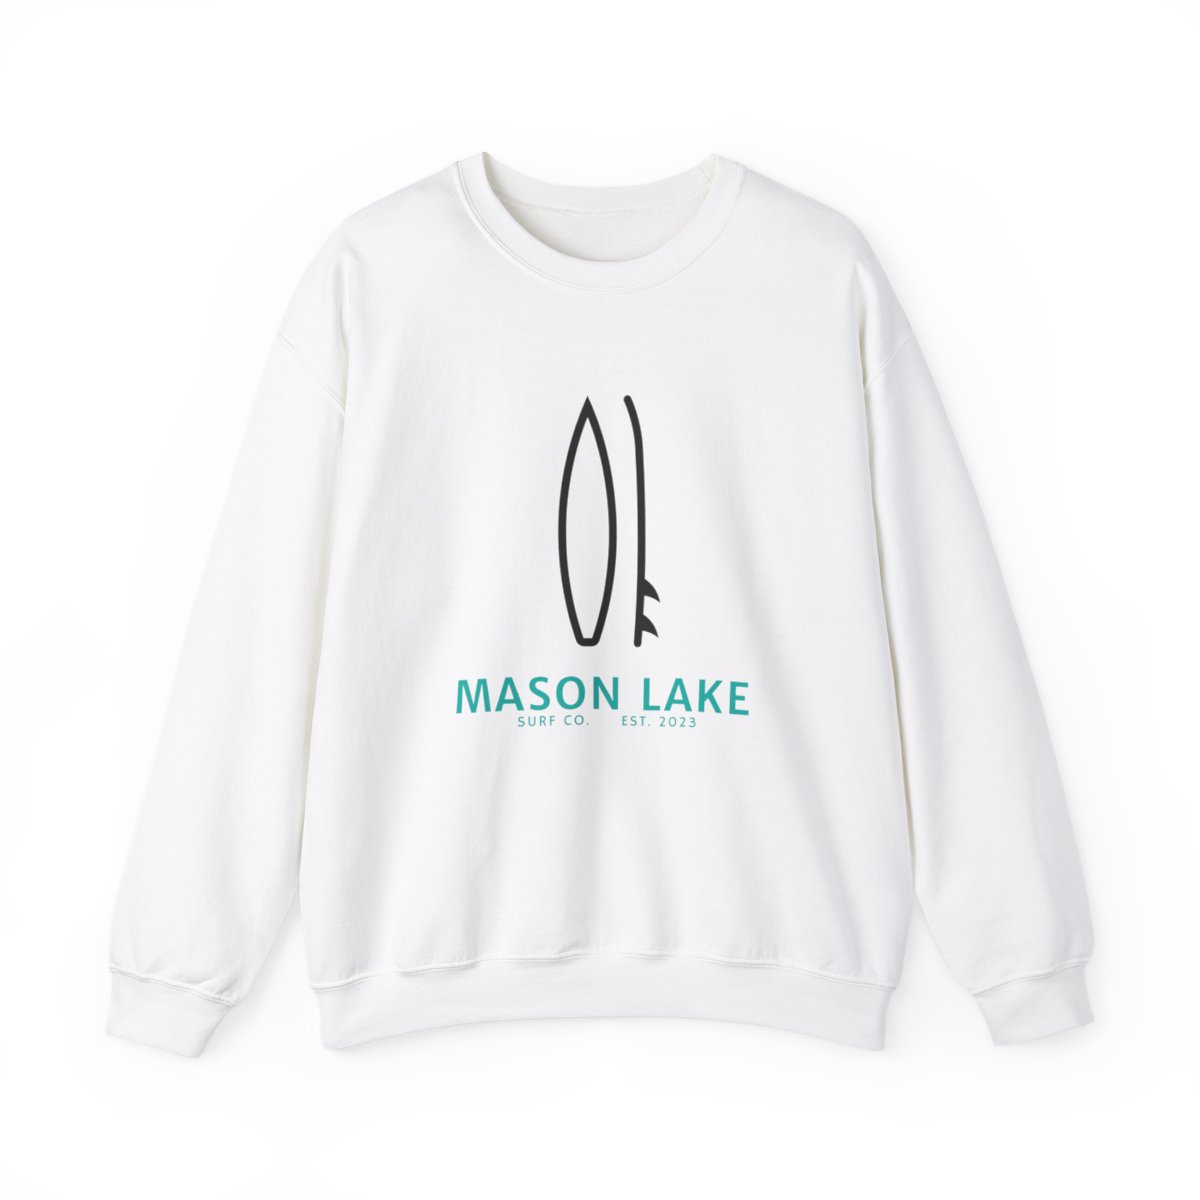 Mason Lake Surf Club Crew neck sweatshirt product main image